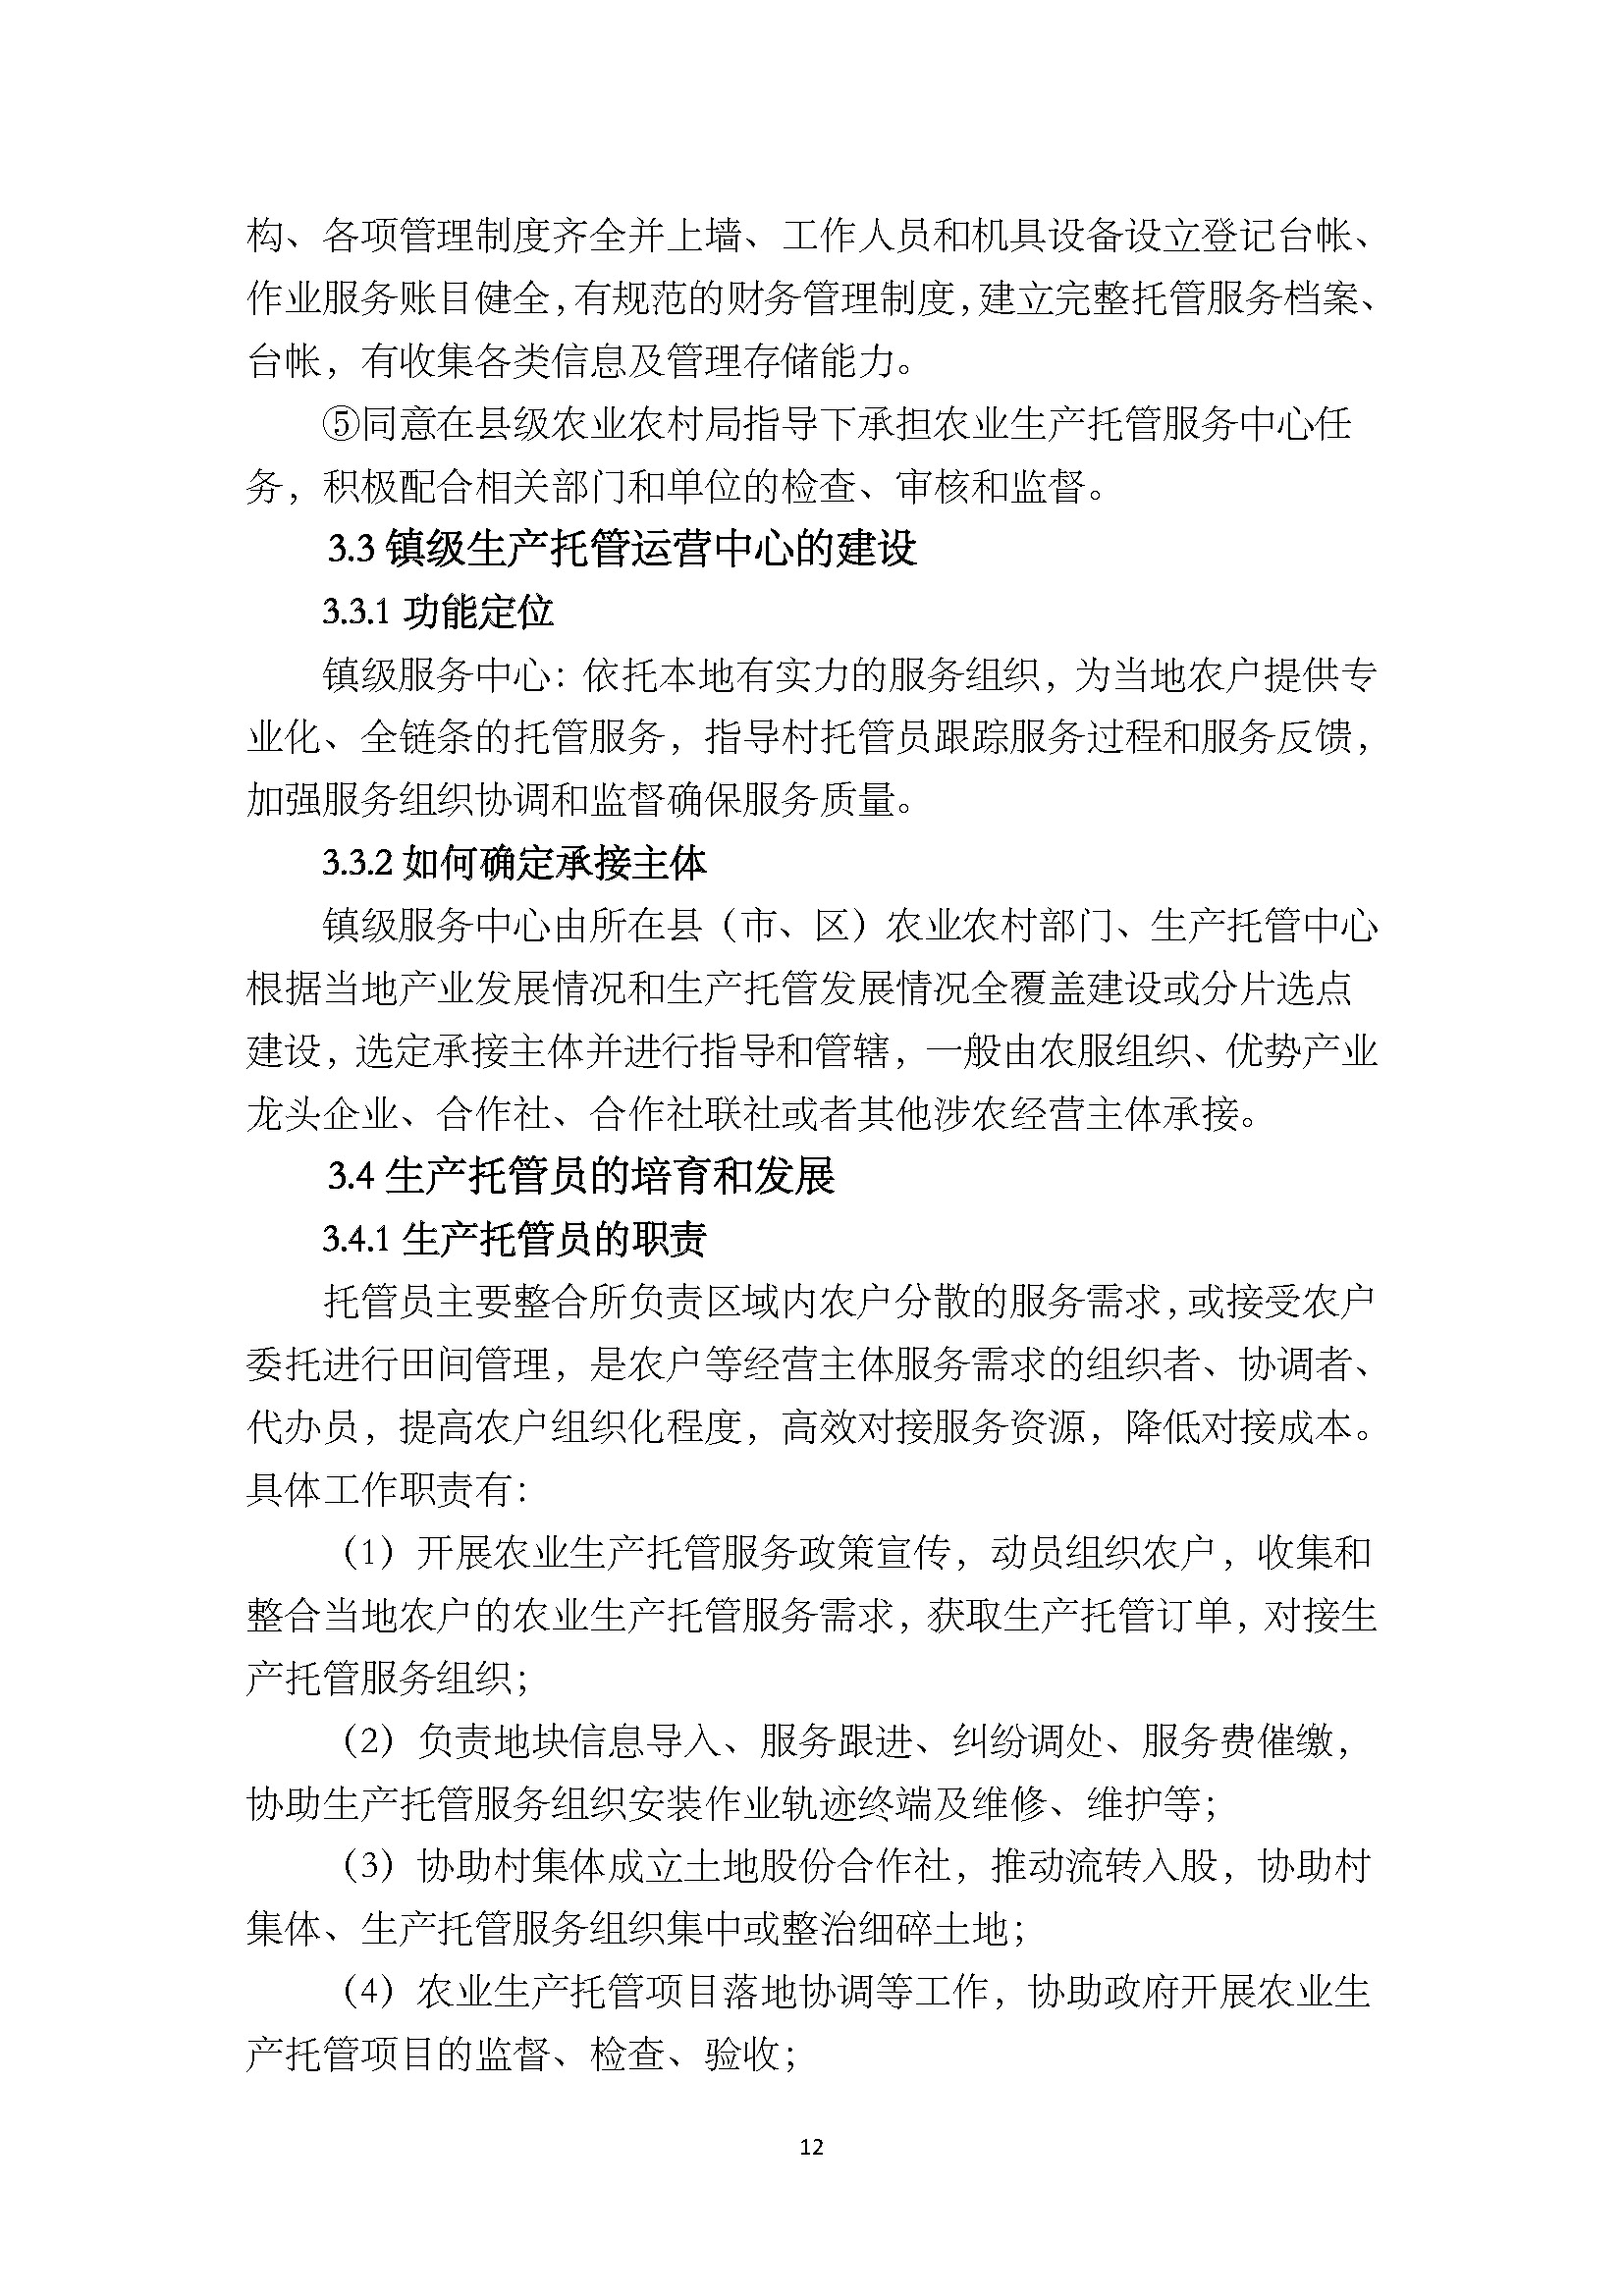 1.广东省农业生产托管服务工作手册_页面_14.jpg